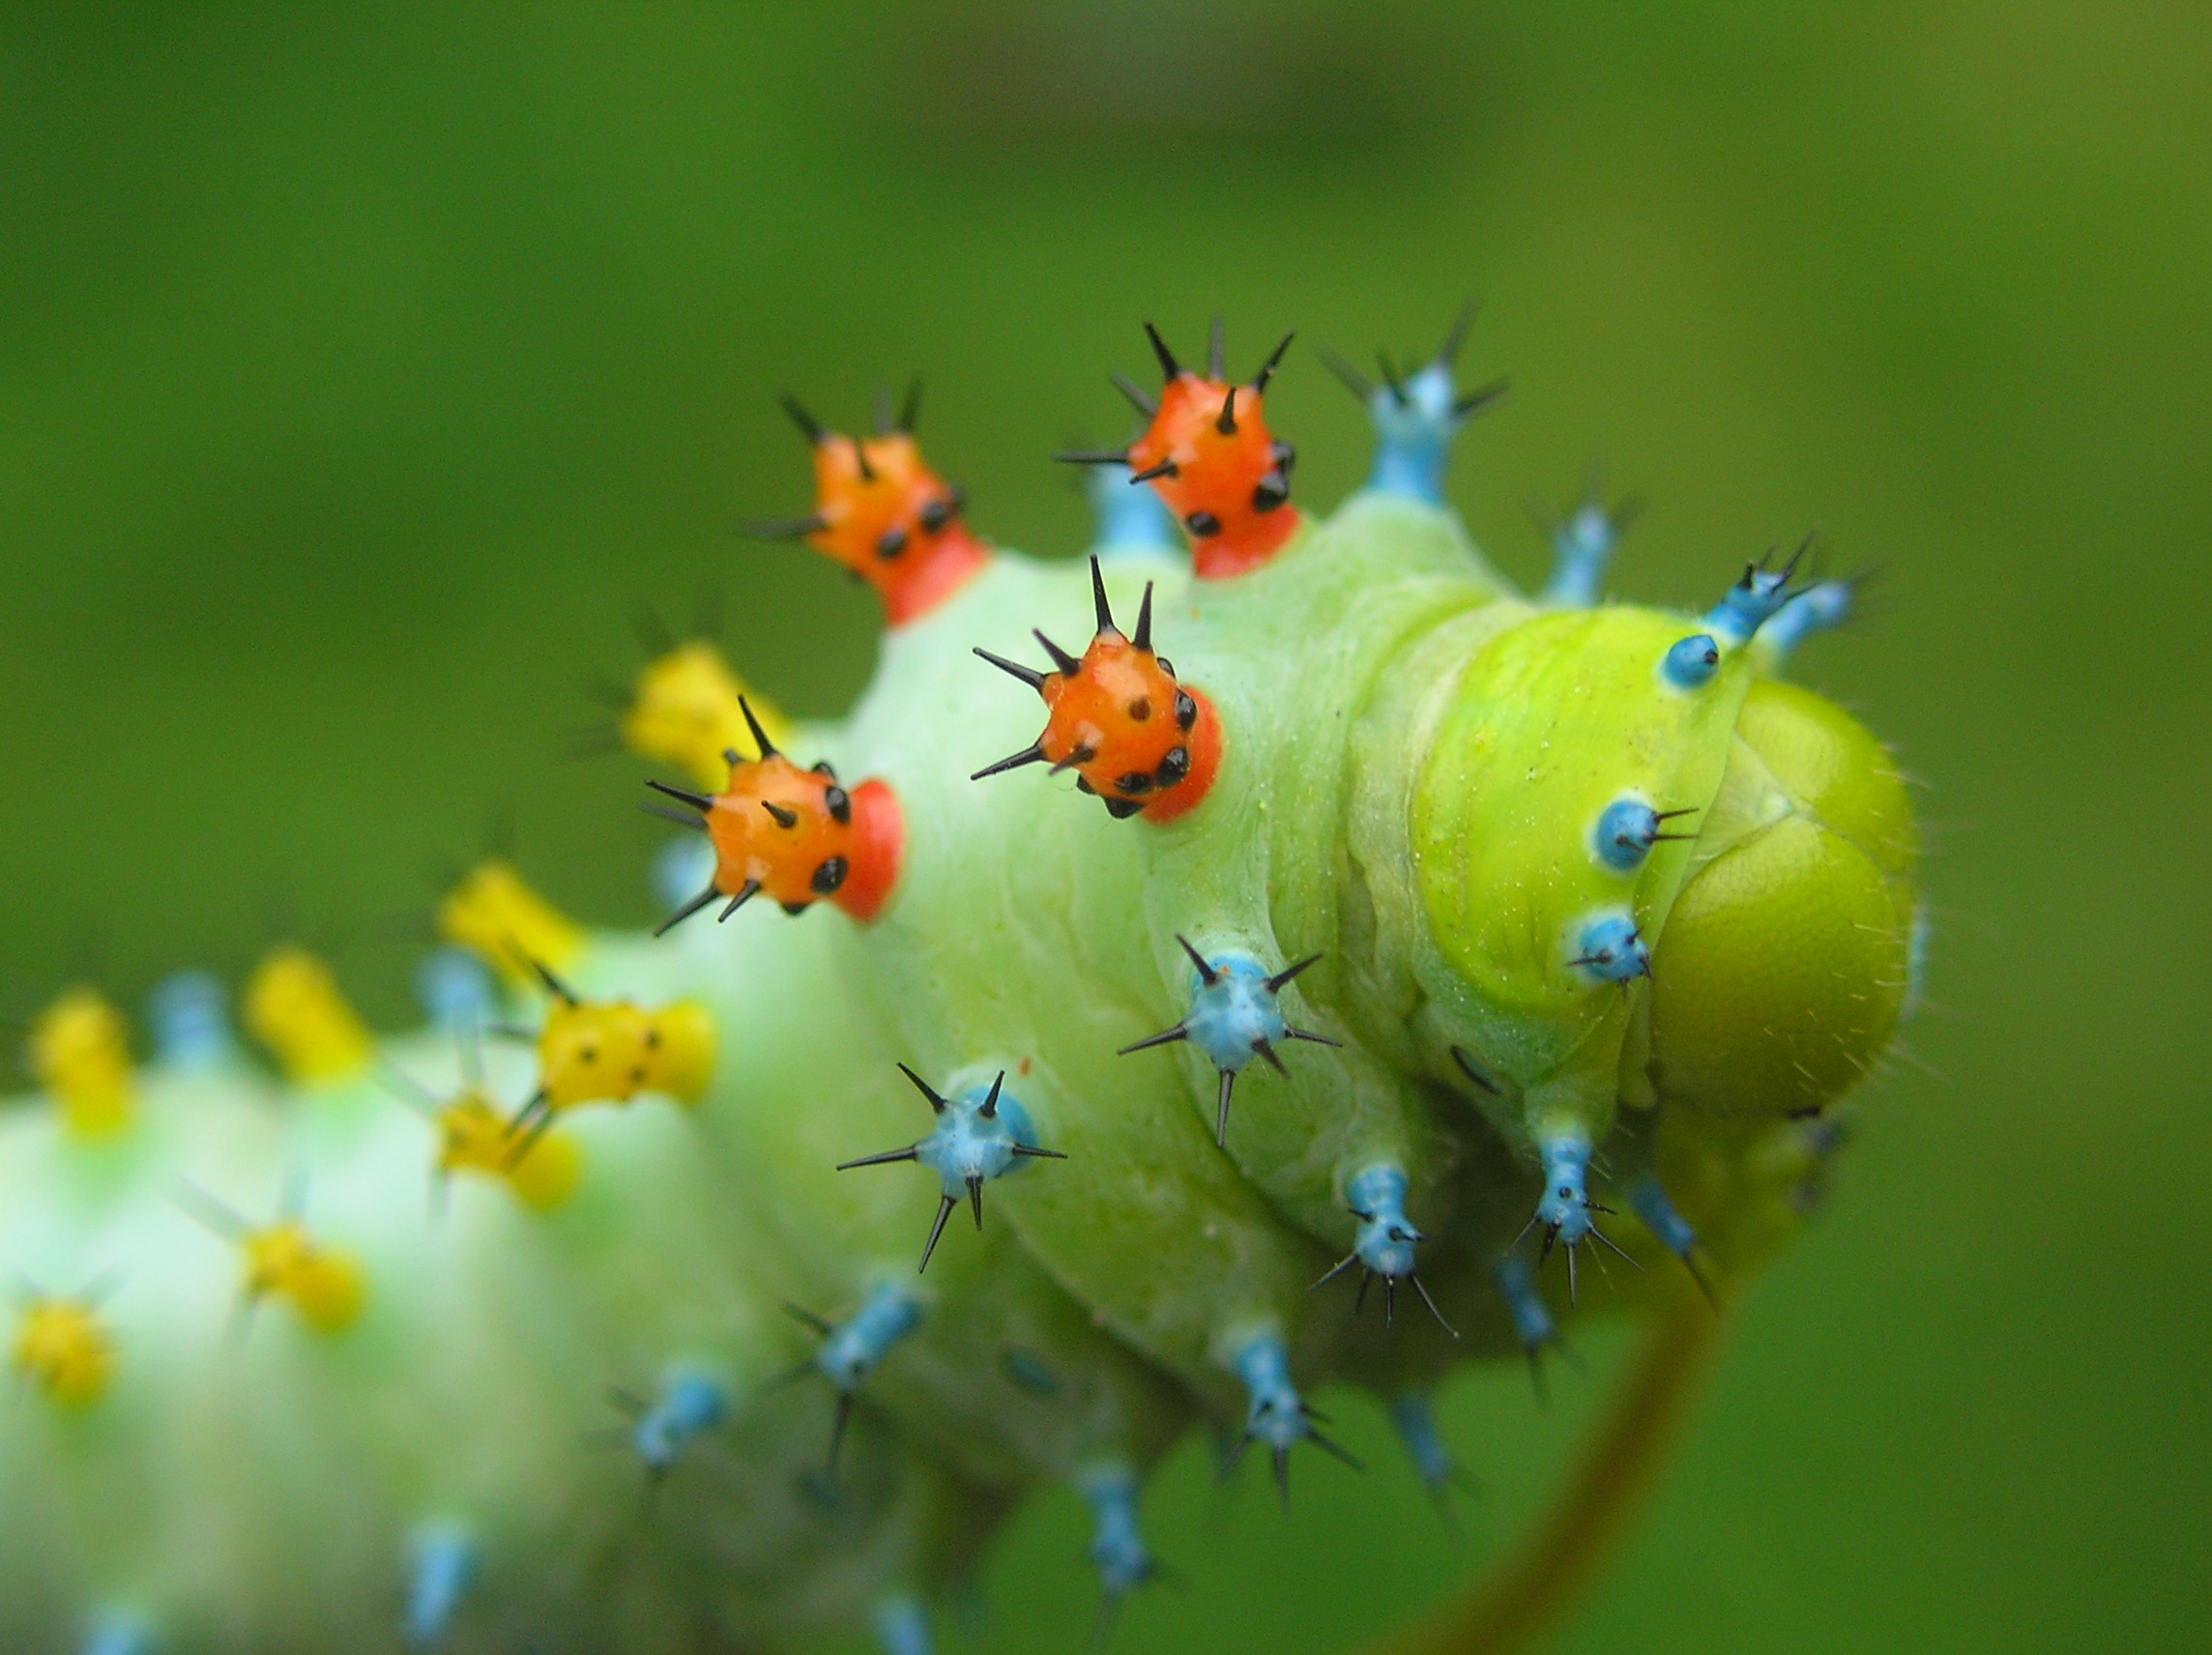 macro, insect, crawl, caterpillar wallpaper for mobile